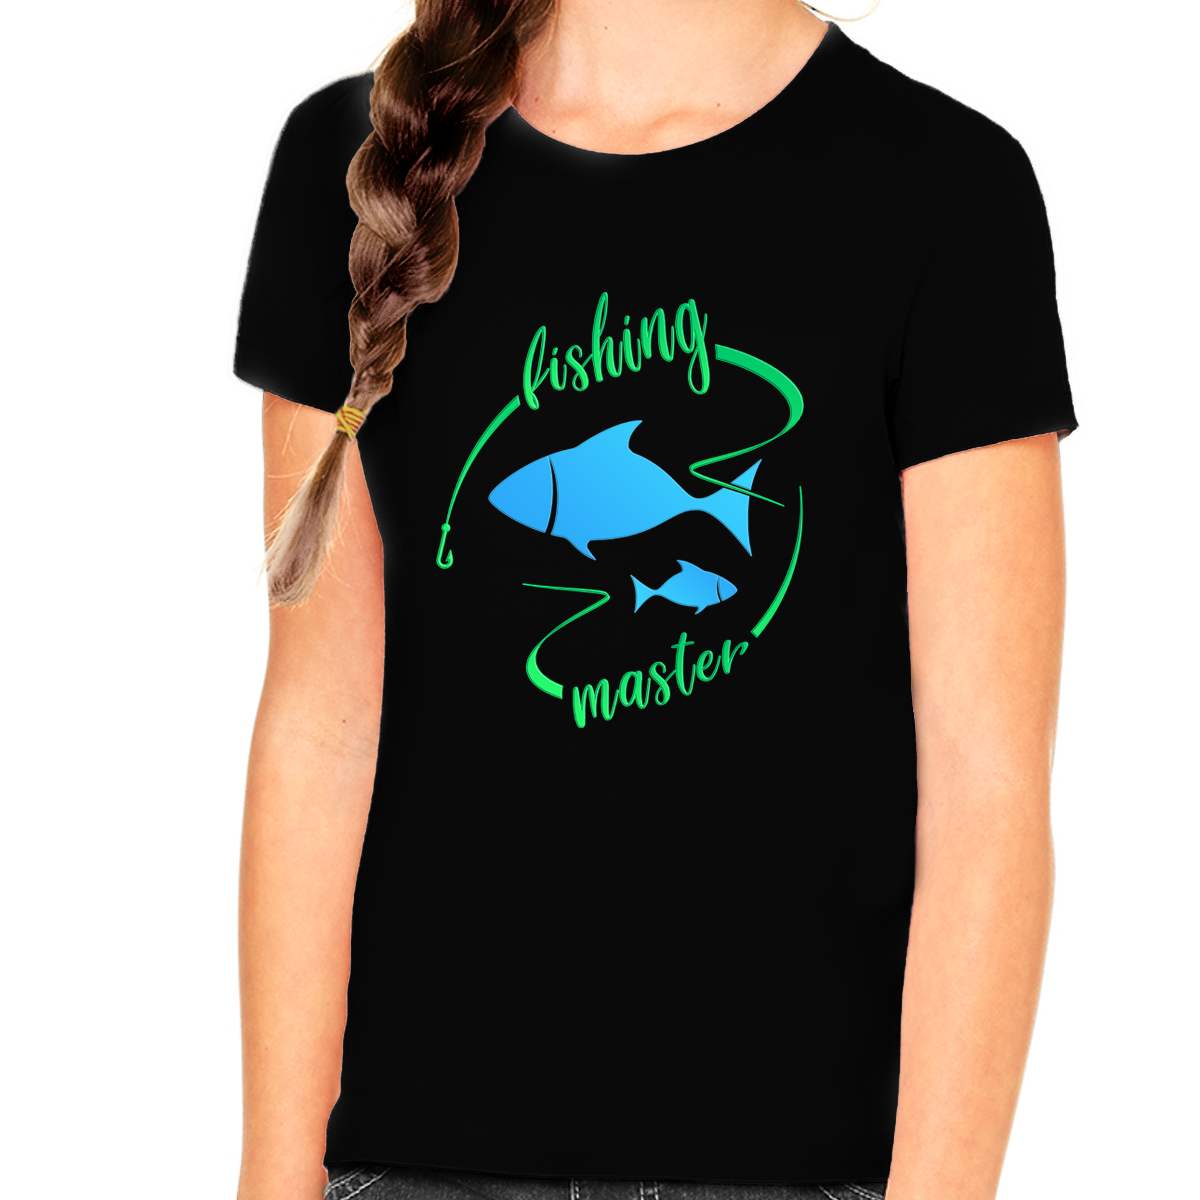 Fishing Shirts for Girls - Fishing Shirt - Kids Fishing Shirts - Fishing Master T-Shirt - Fishing Gift Shirt